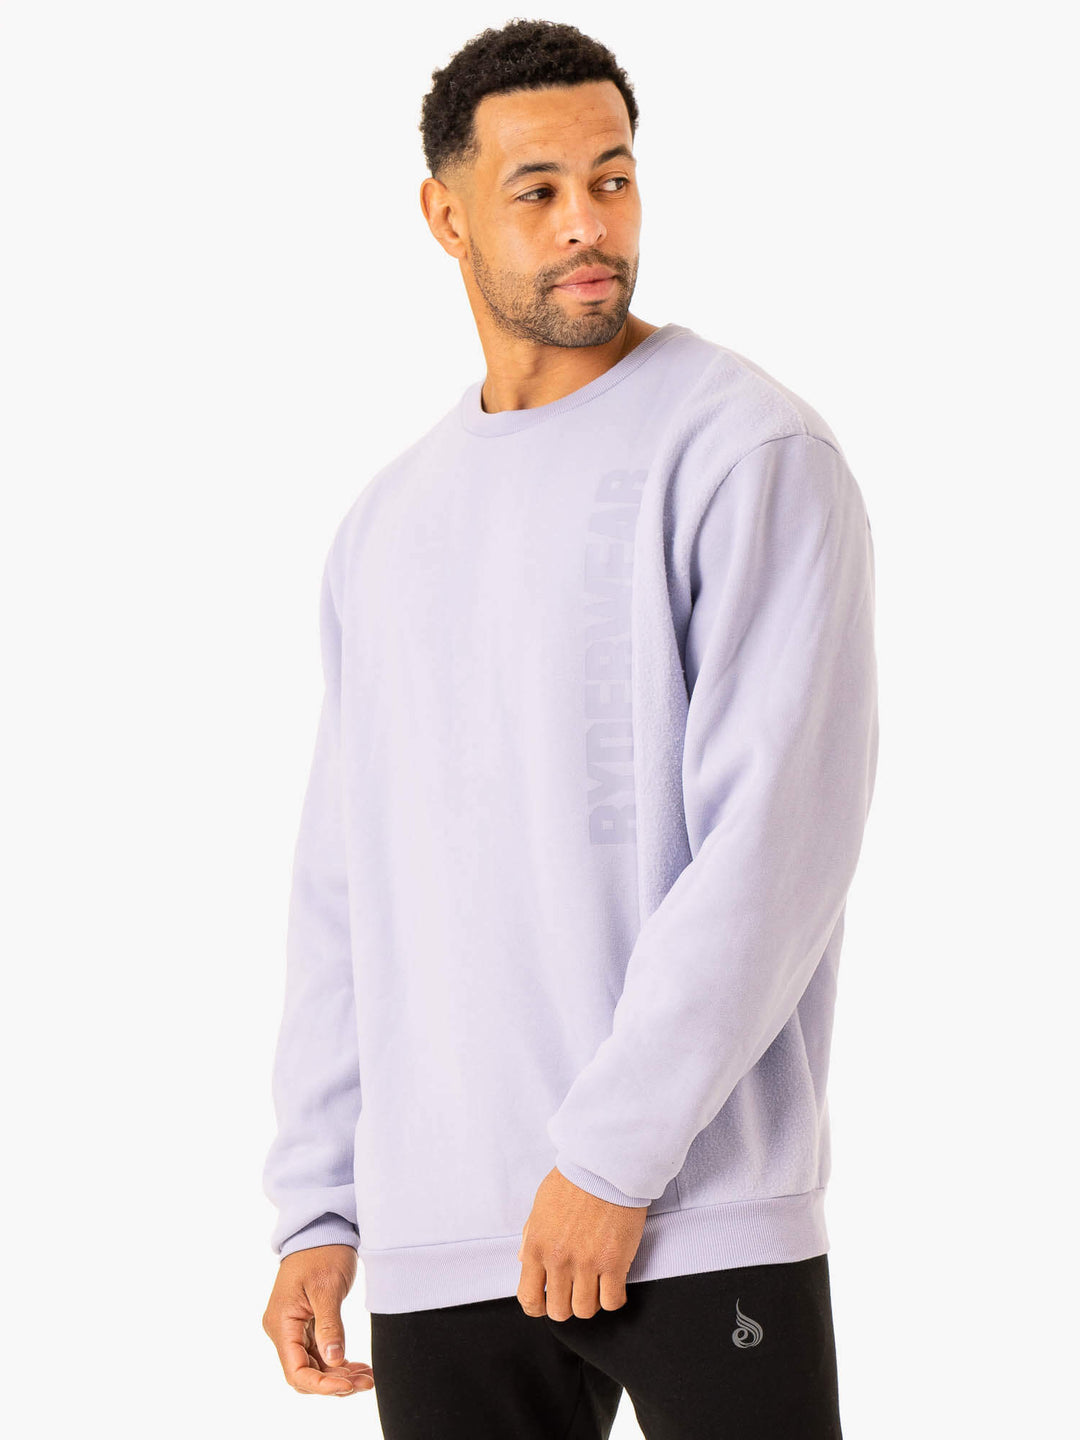 Heritage Pullover Jumper - Lavender Clothing Ryderwear 